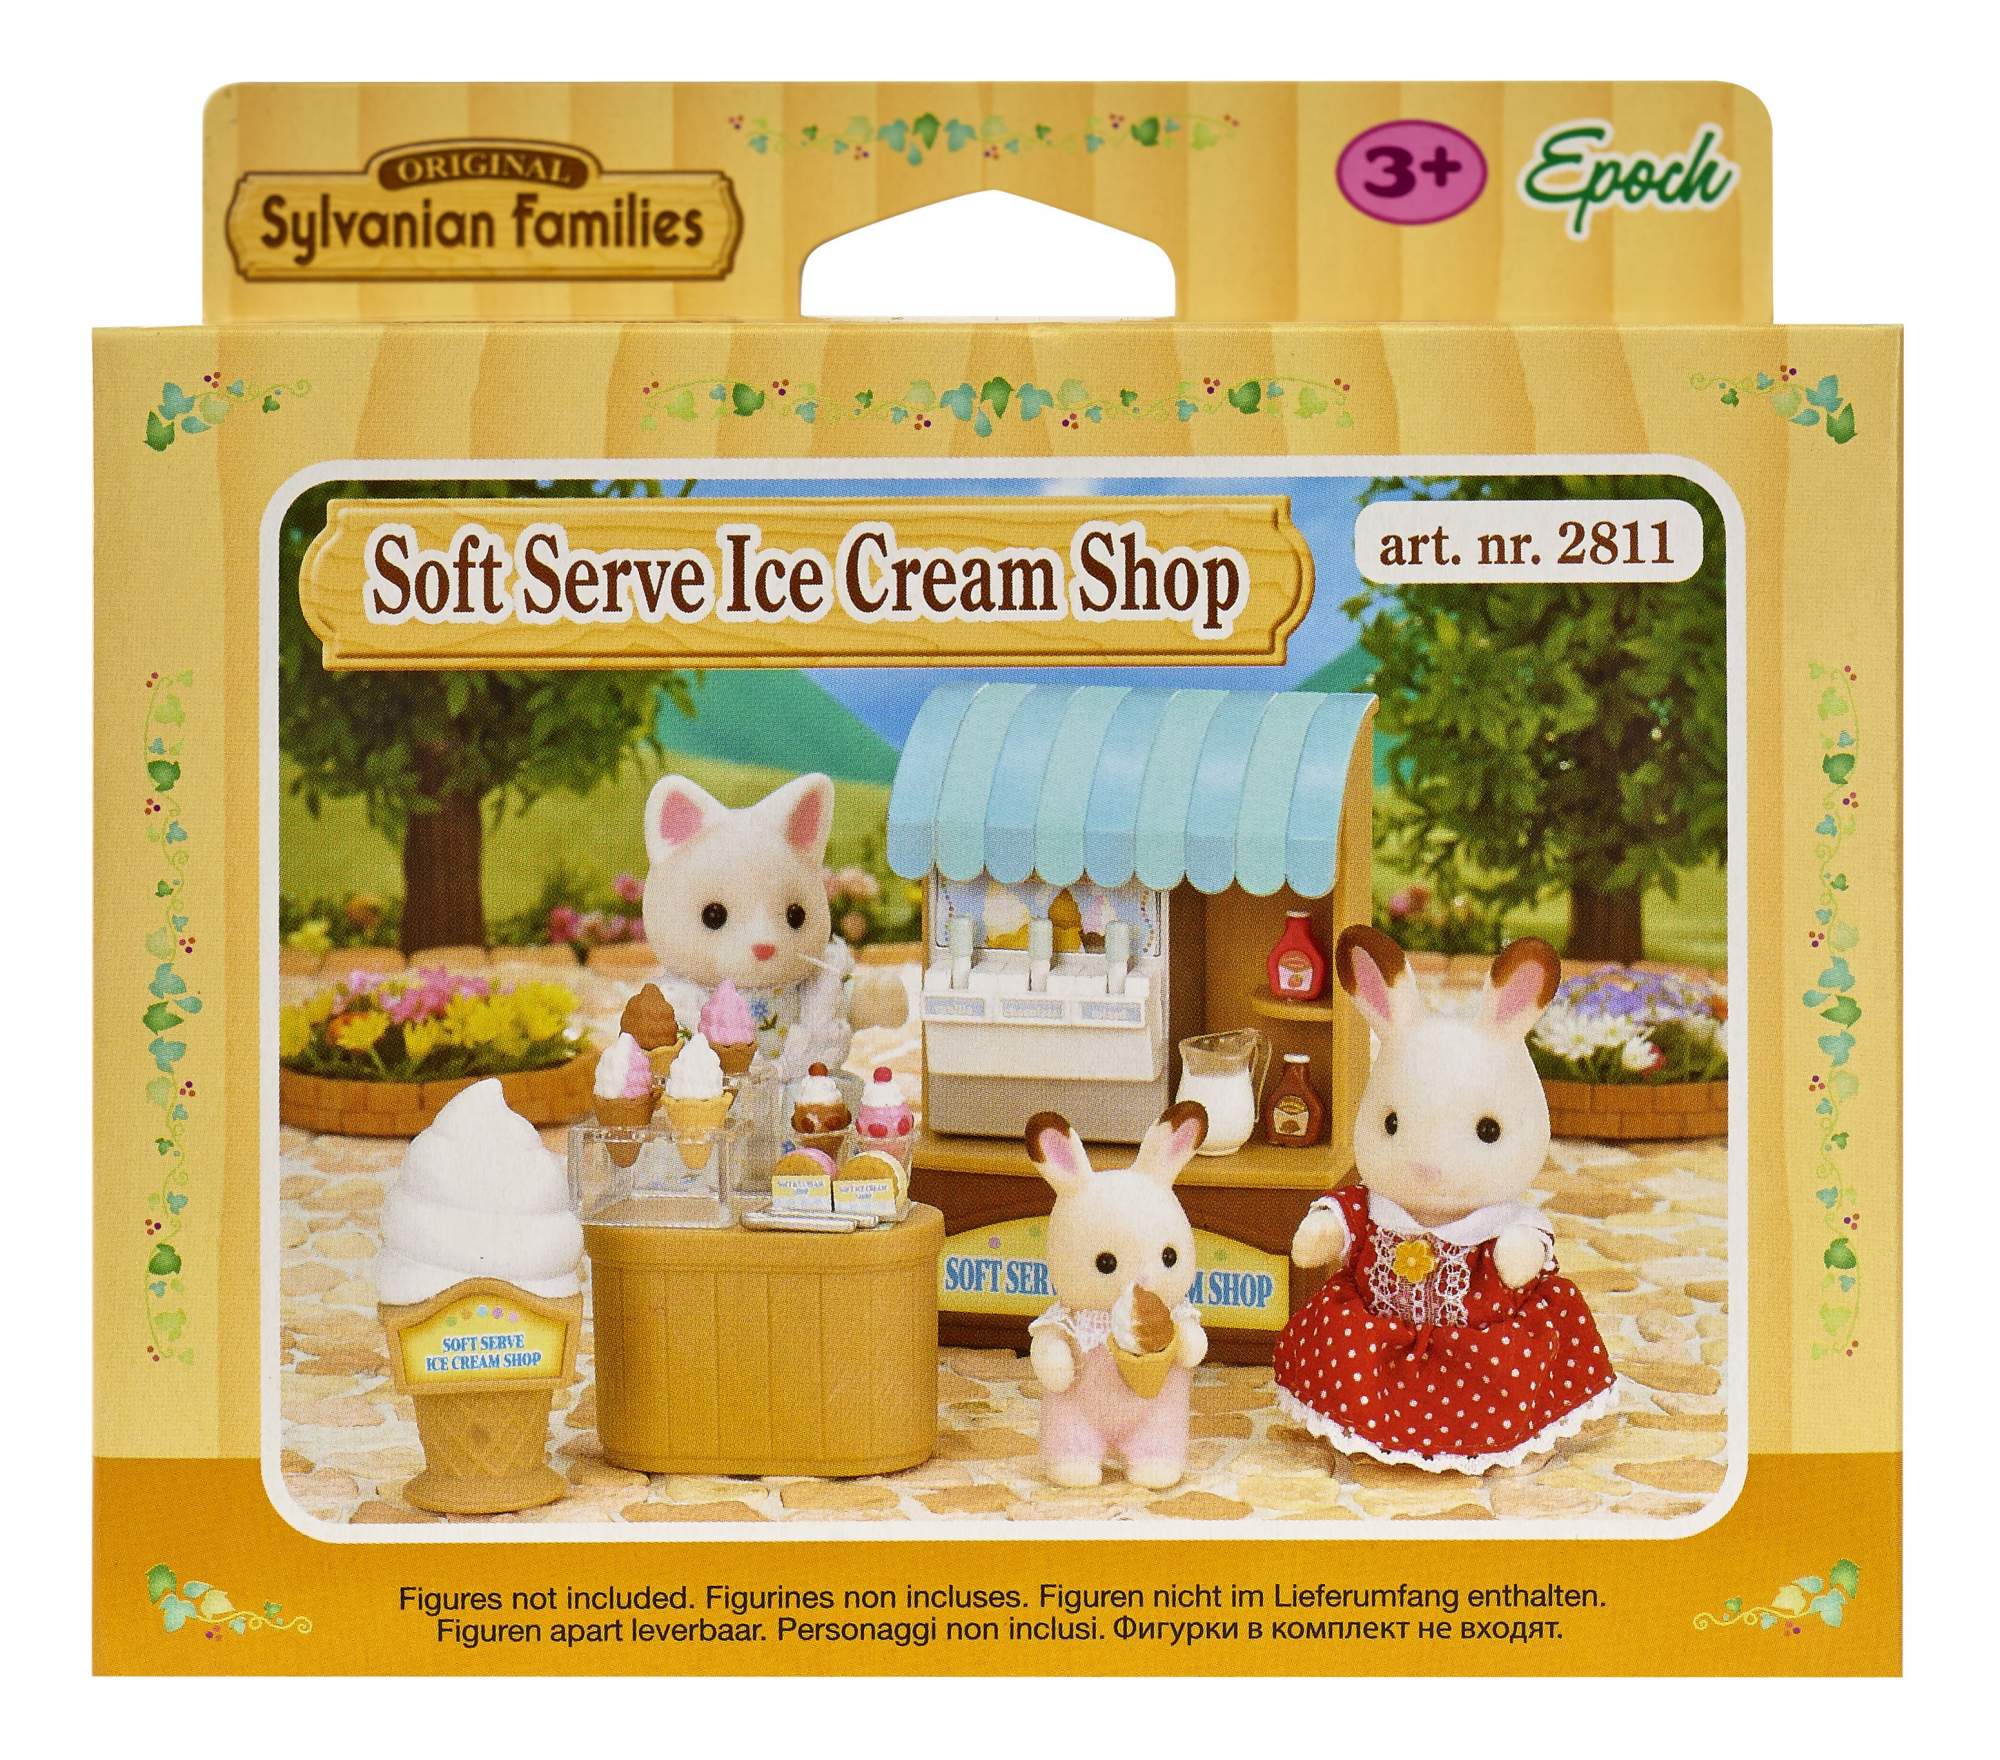 Игровой набор Sylvanian Families магазин мороженого 2811/5054